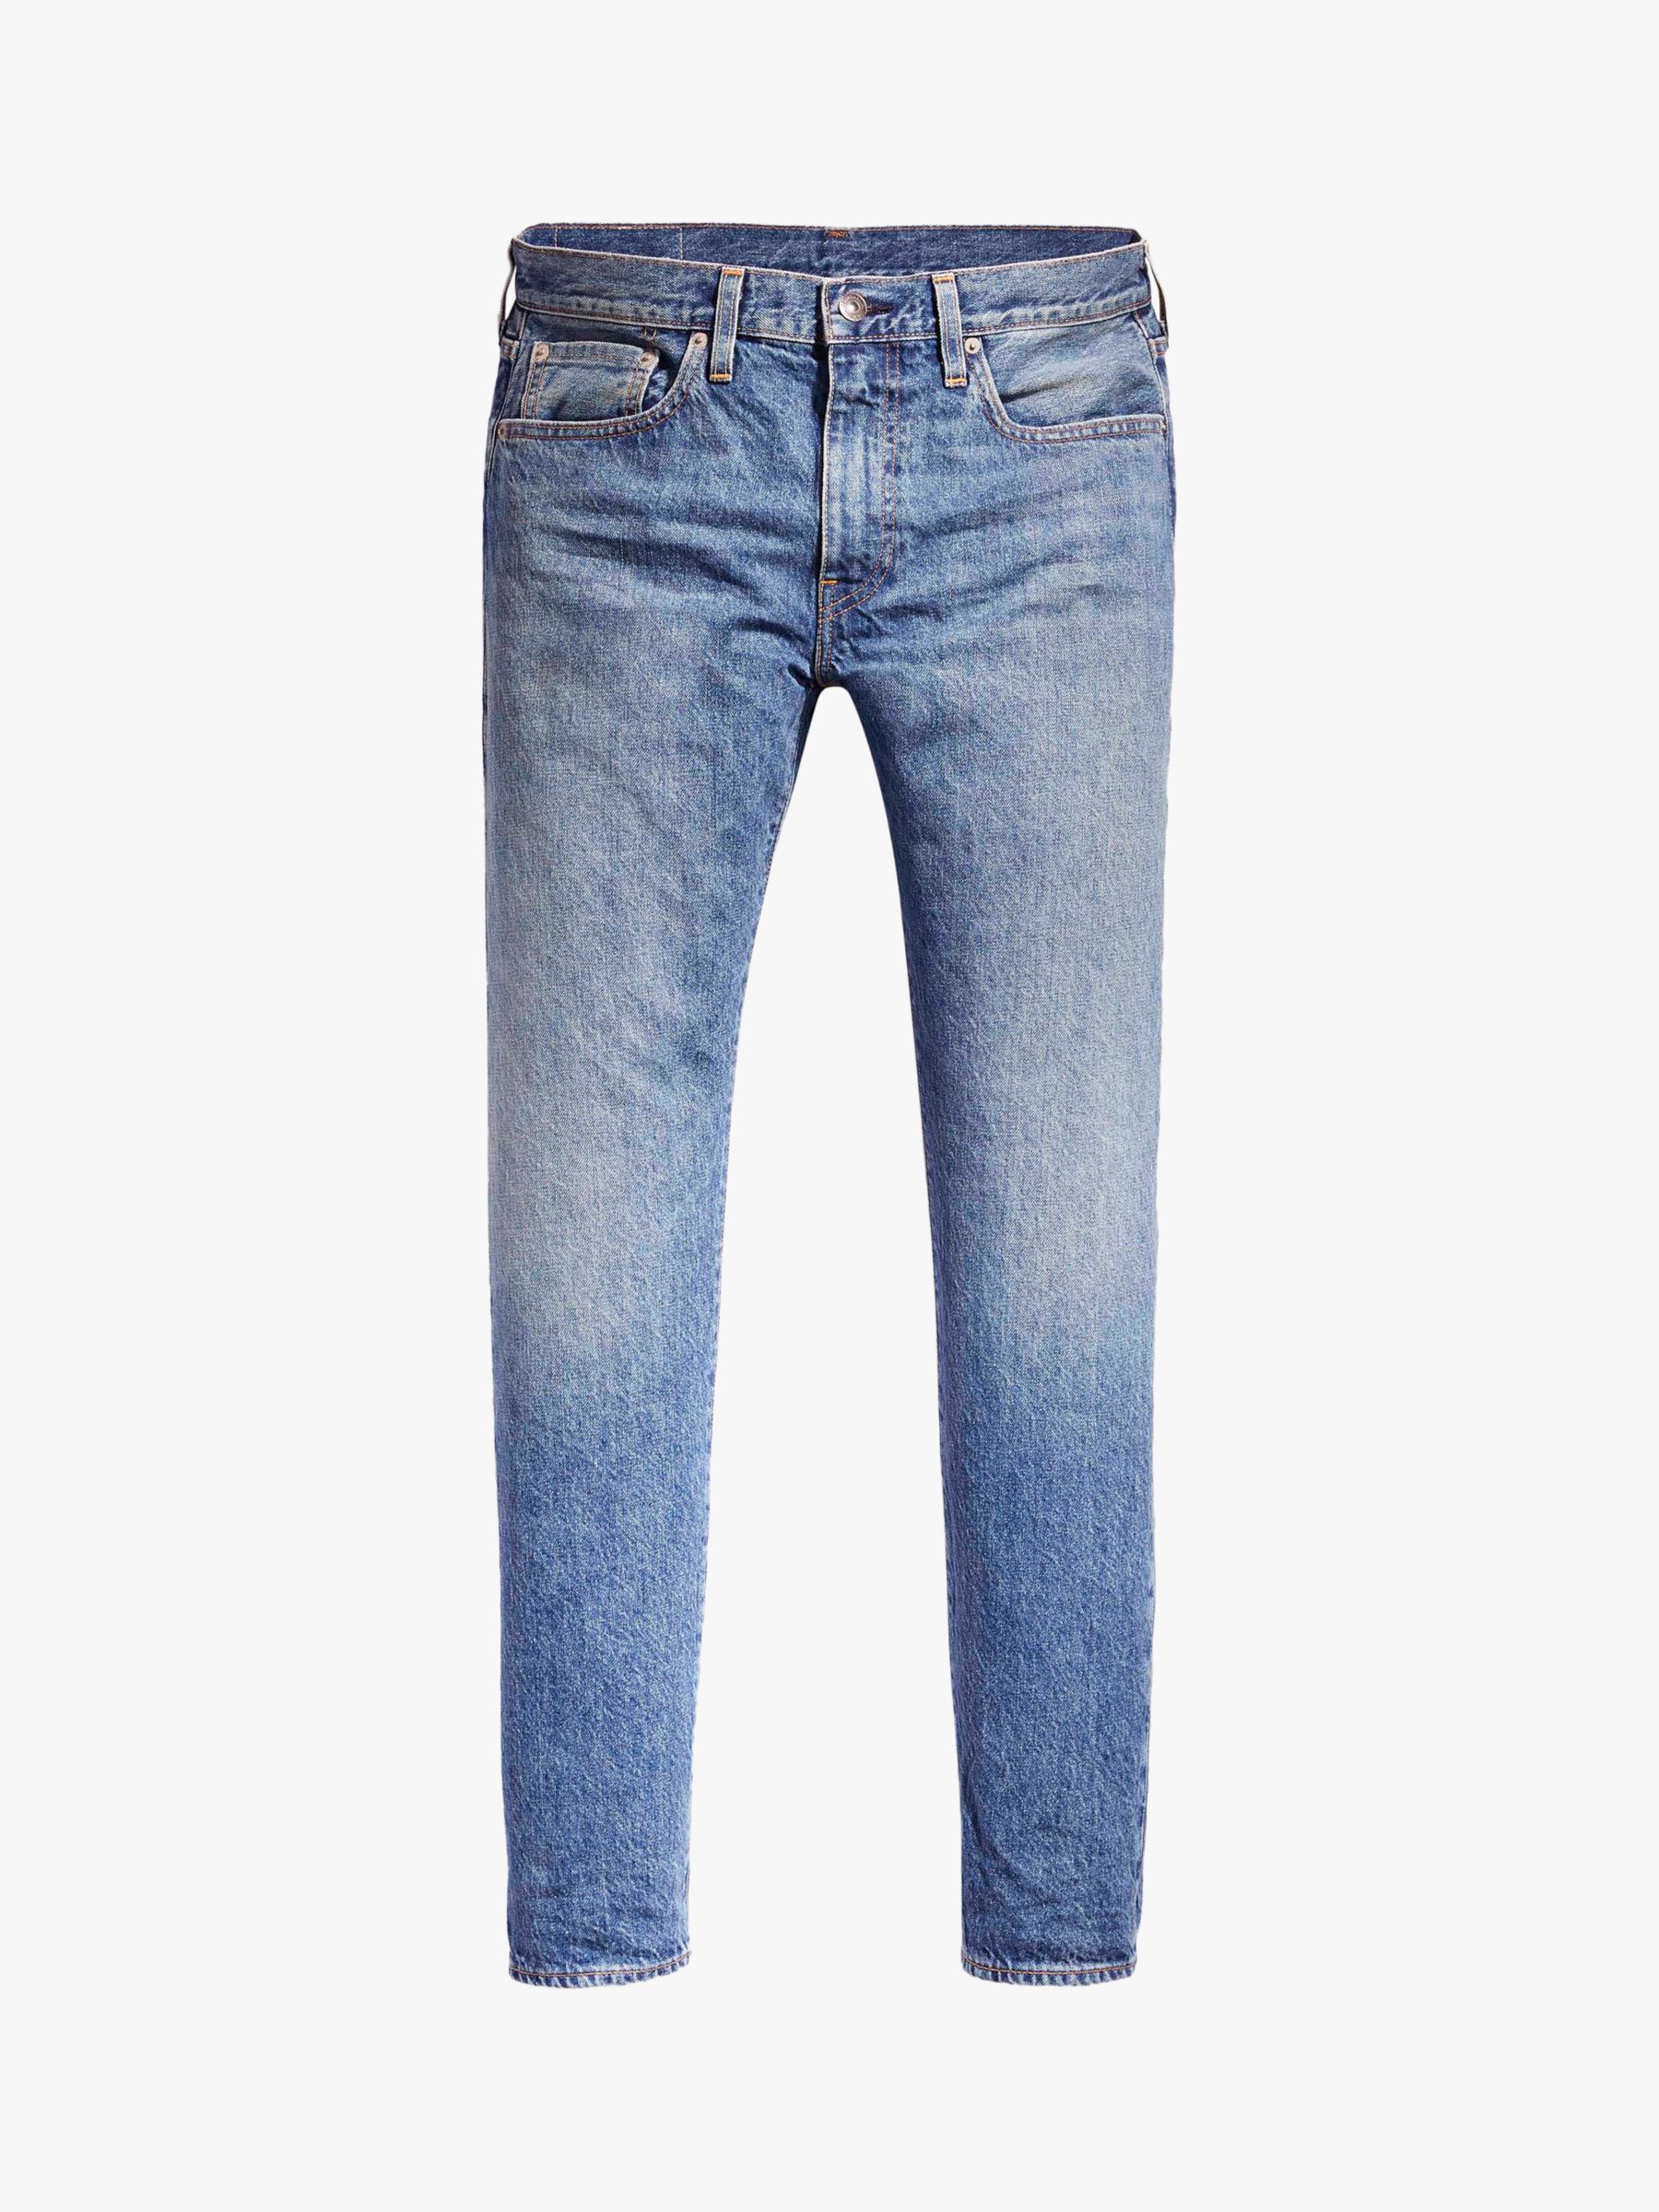 511 Slim Fit Jeans, Lighter Denim 